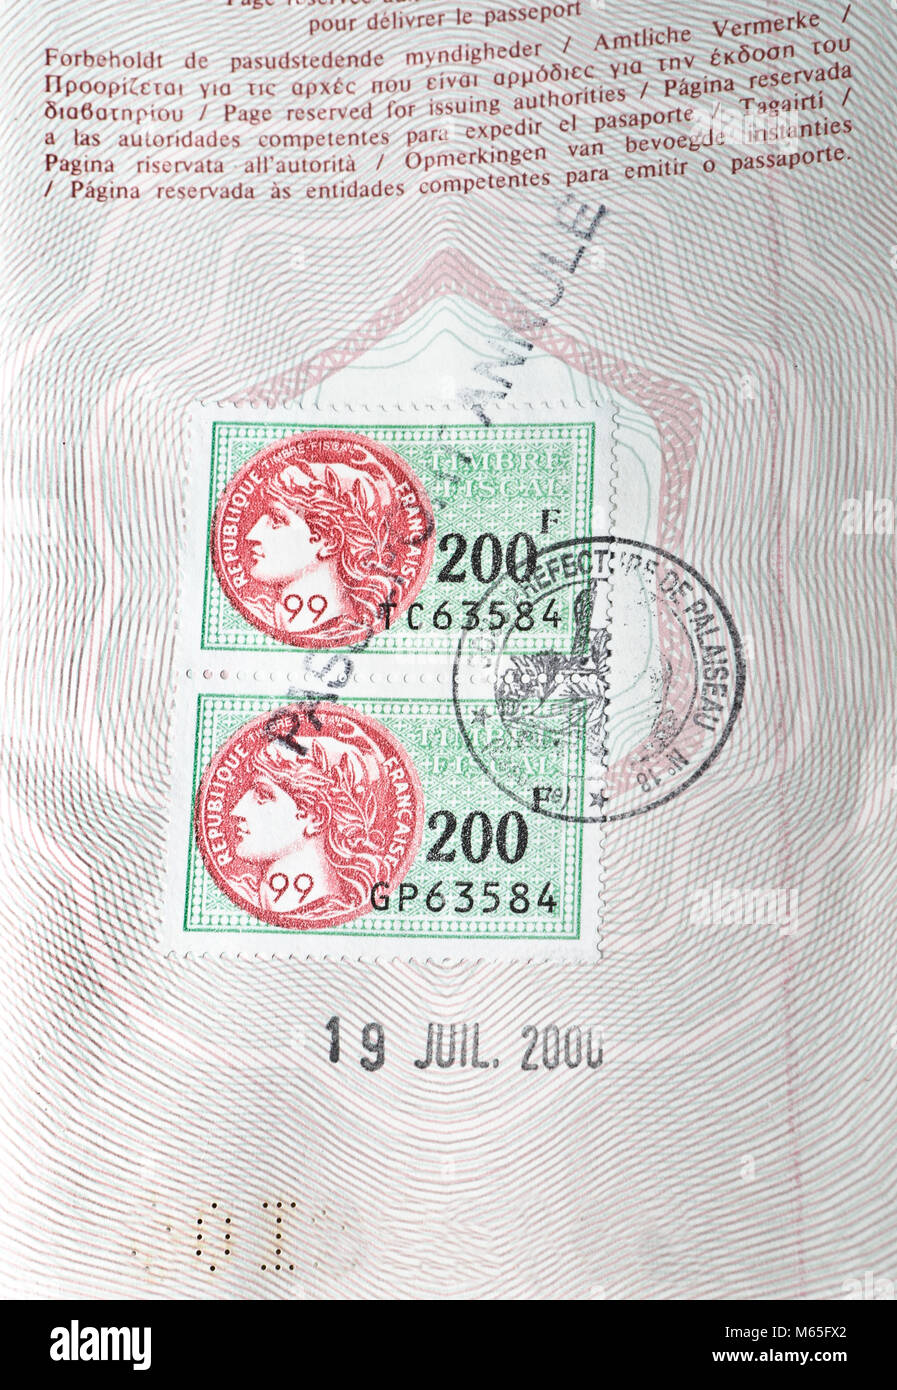 French passport. Visa Stock Photo